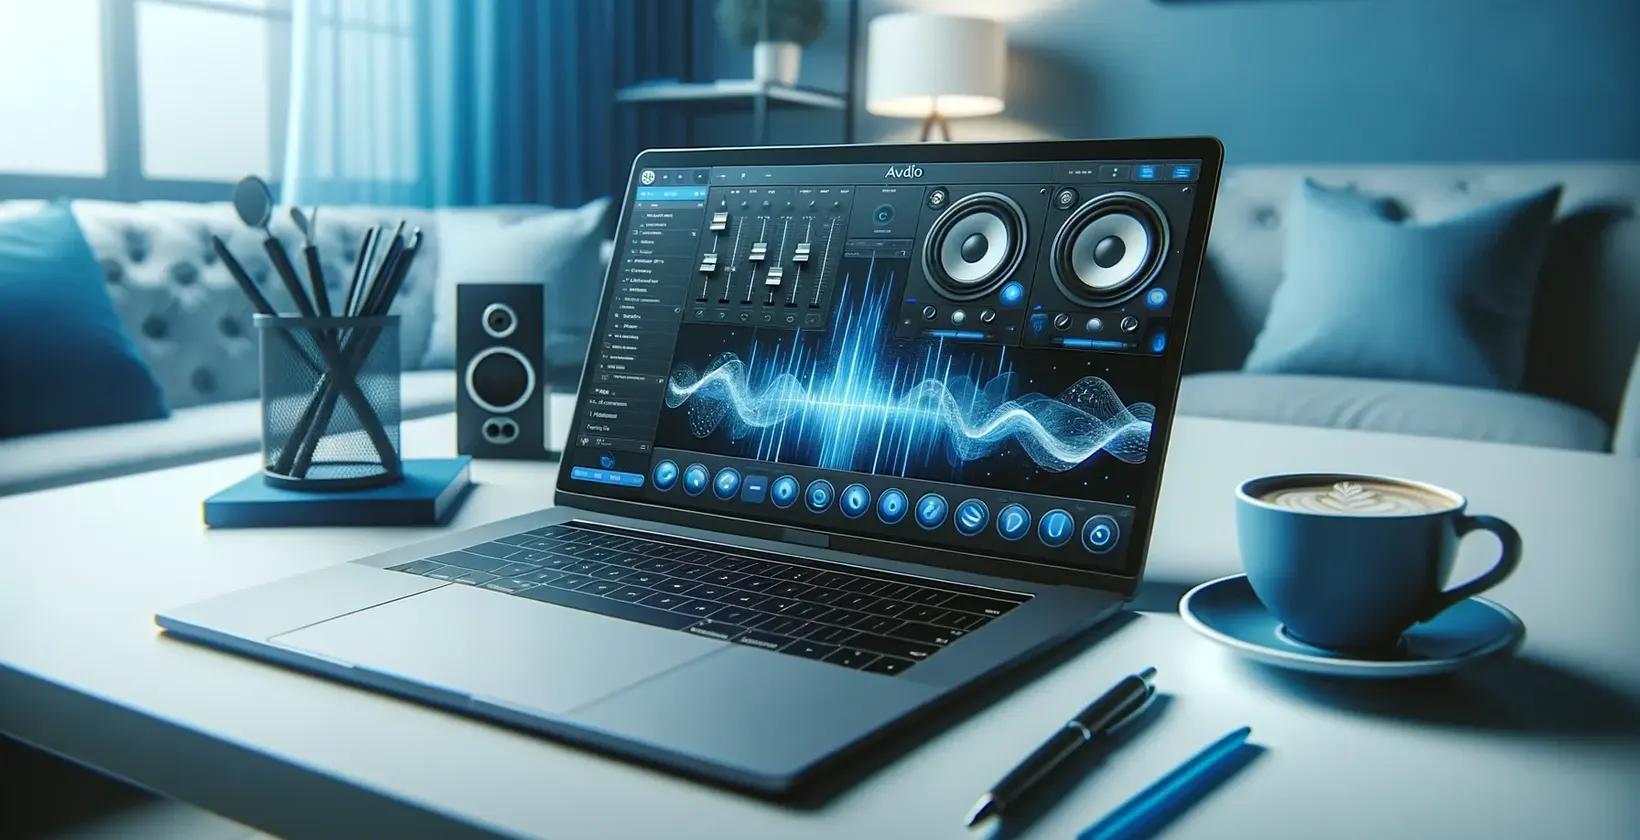 A laptop egy kávé mellett megjeleníti a hangszórócímkéket és a hullámformát, utalva a hangátírásra.